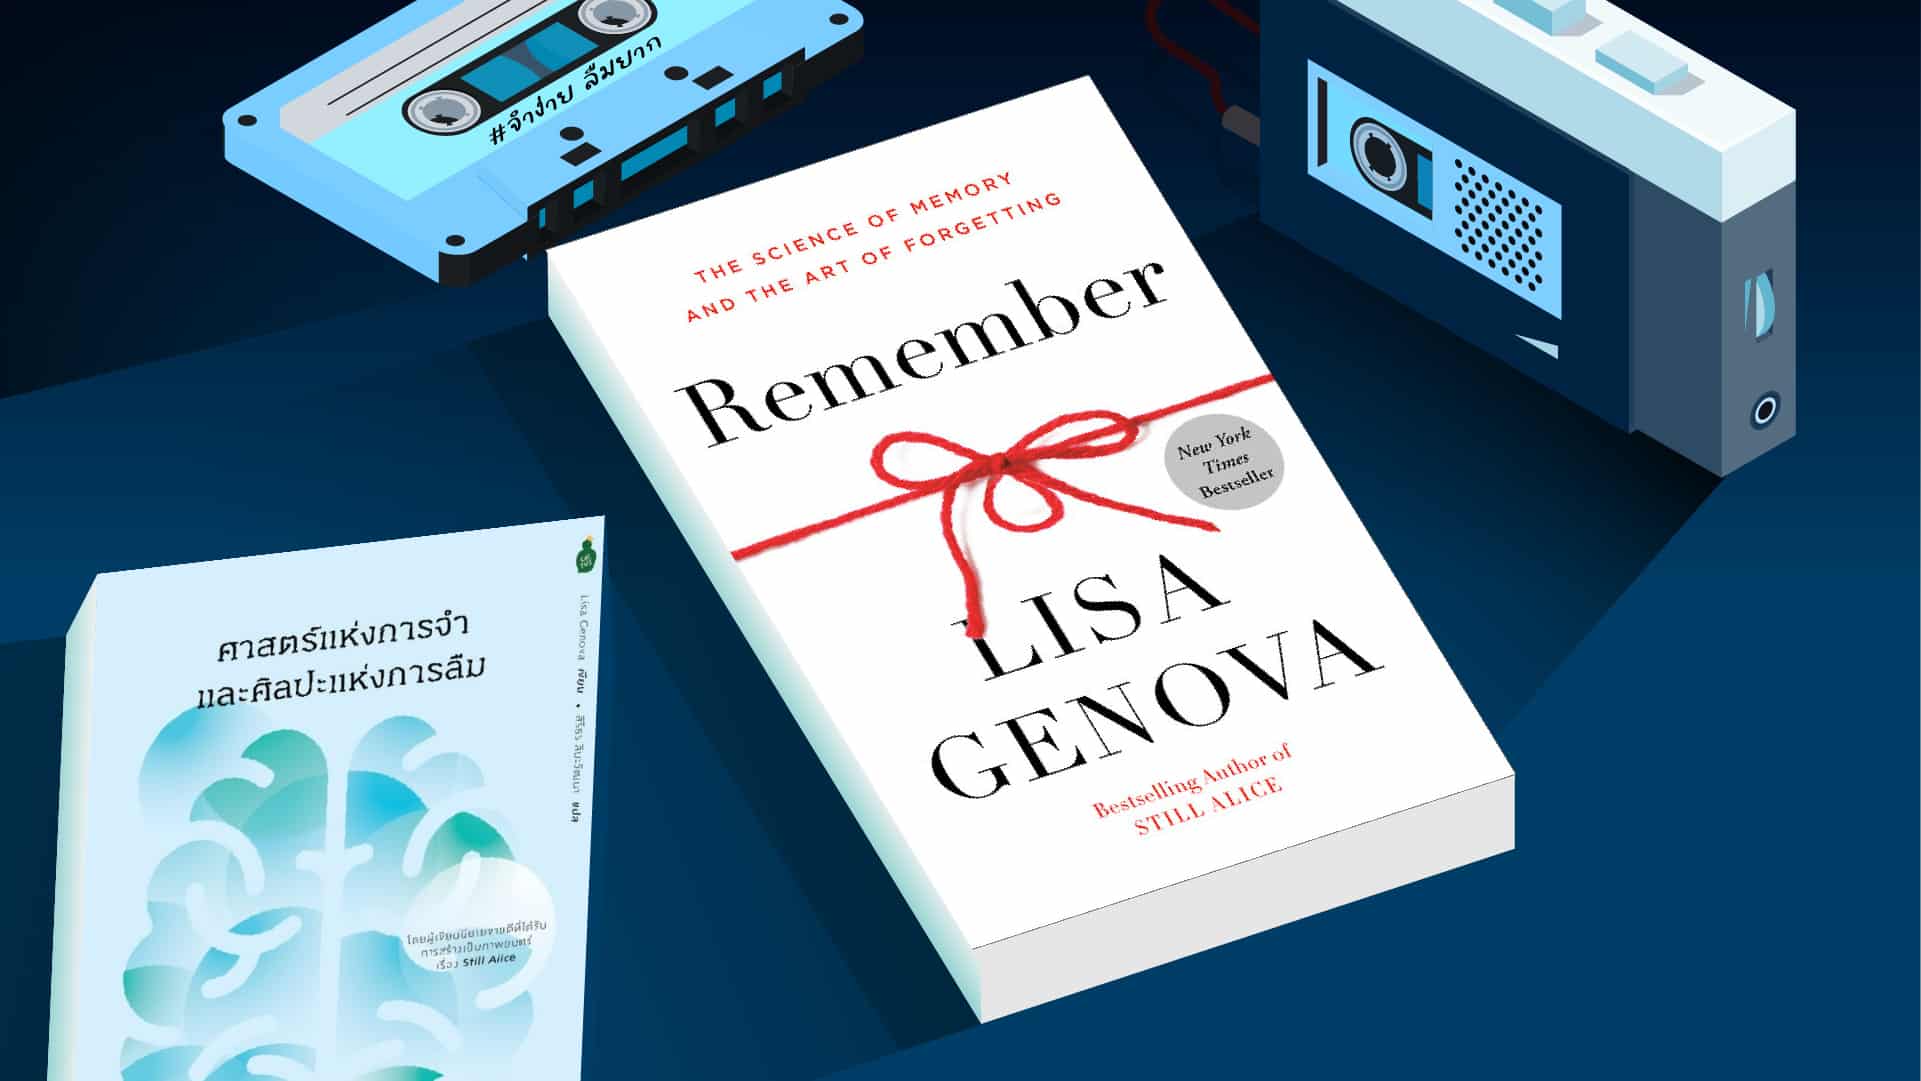 1920-Remember Book Review Lisa Genova